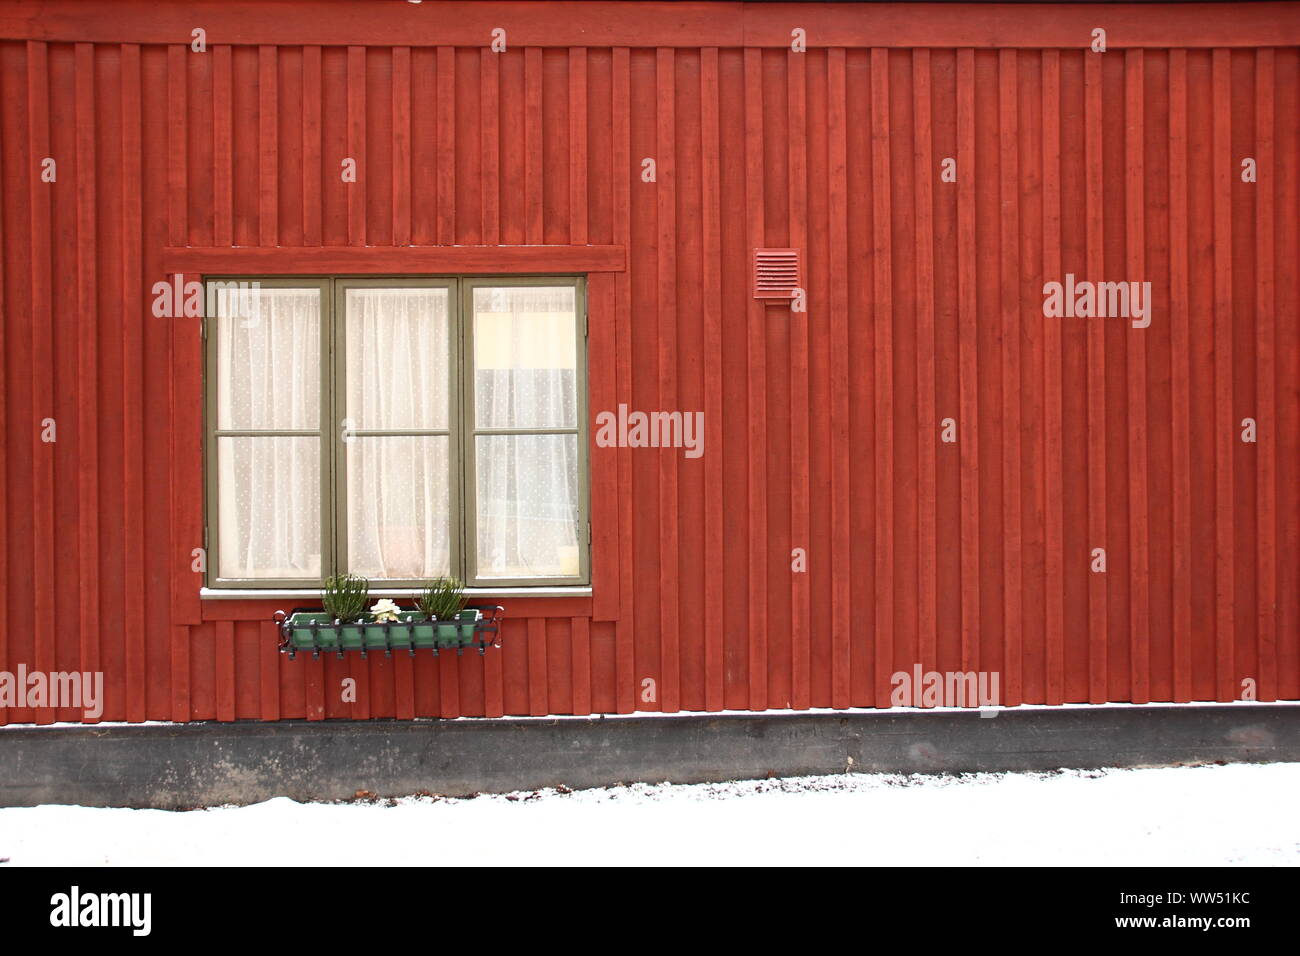 Ein Fenster mit kleinen Fenster Box zu einem typisch schwedischen Haus Fassade in roter Farbe, Stockfoto